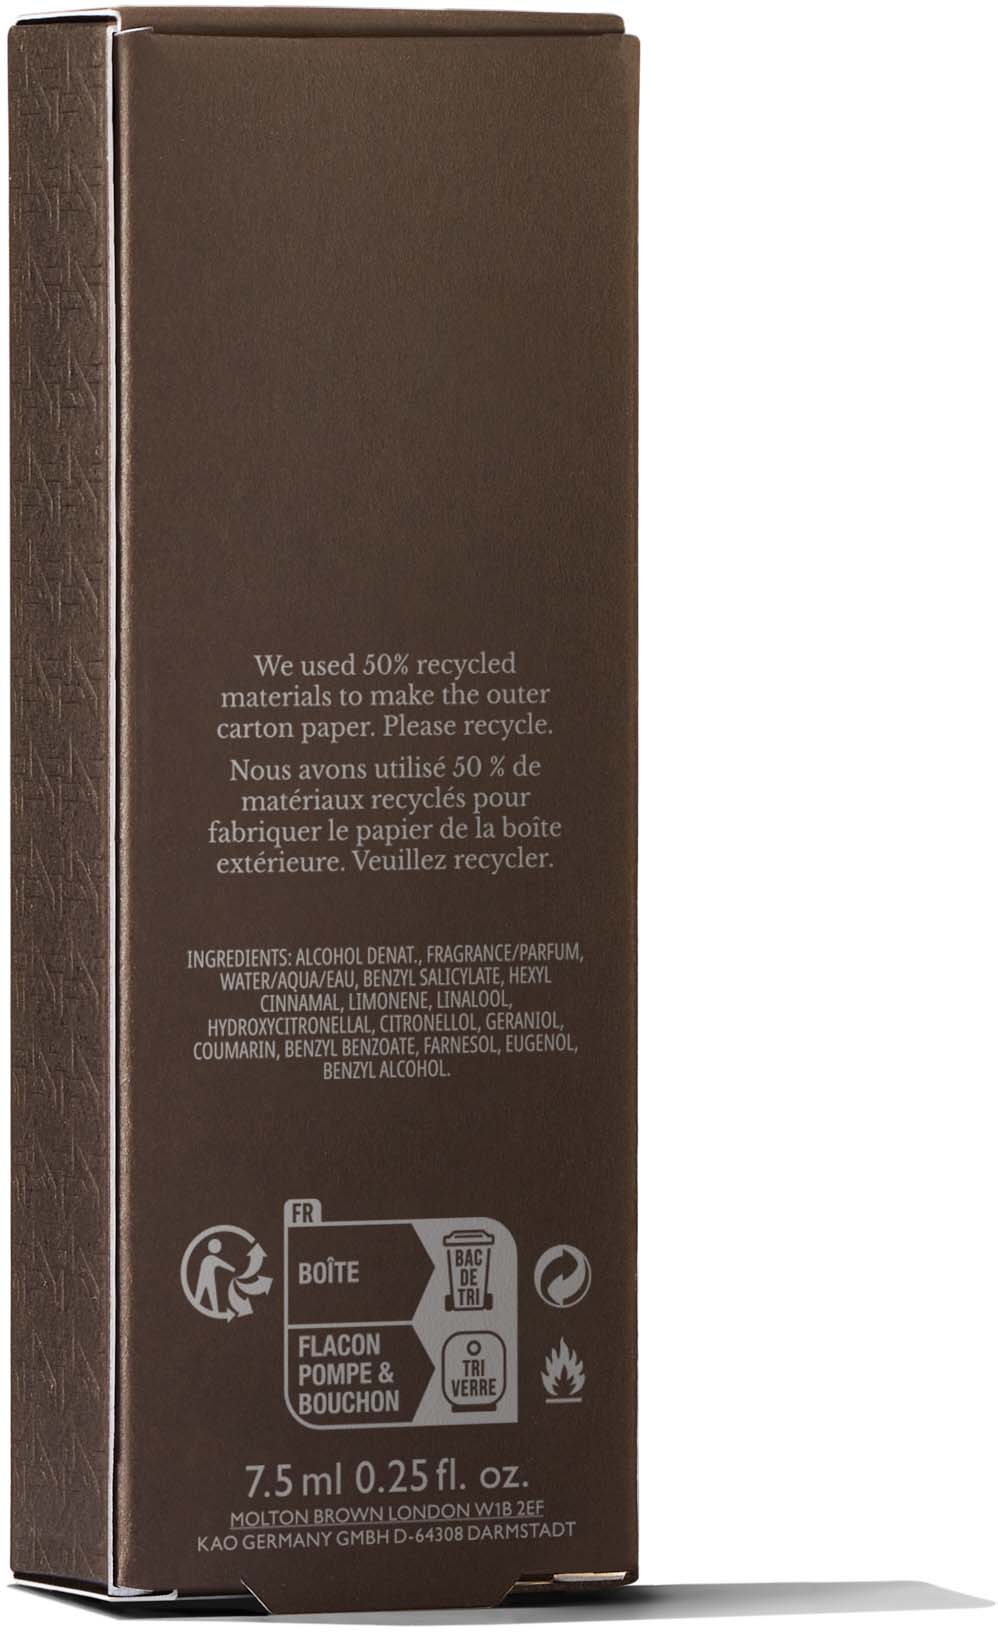 Molton Brown Flora Luminare Eau de Parfum Travel Case Refill 0.25fl oz